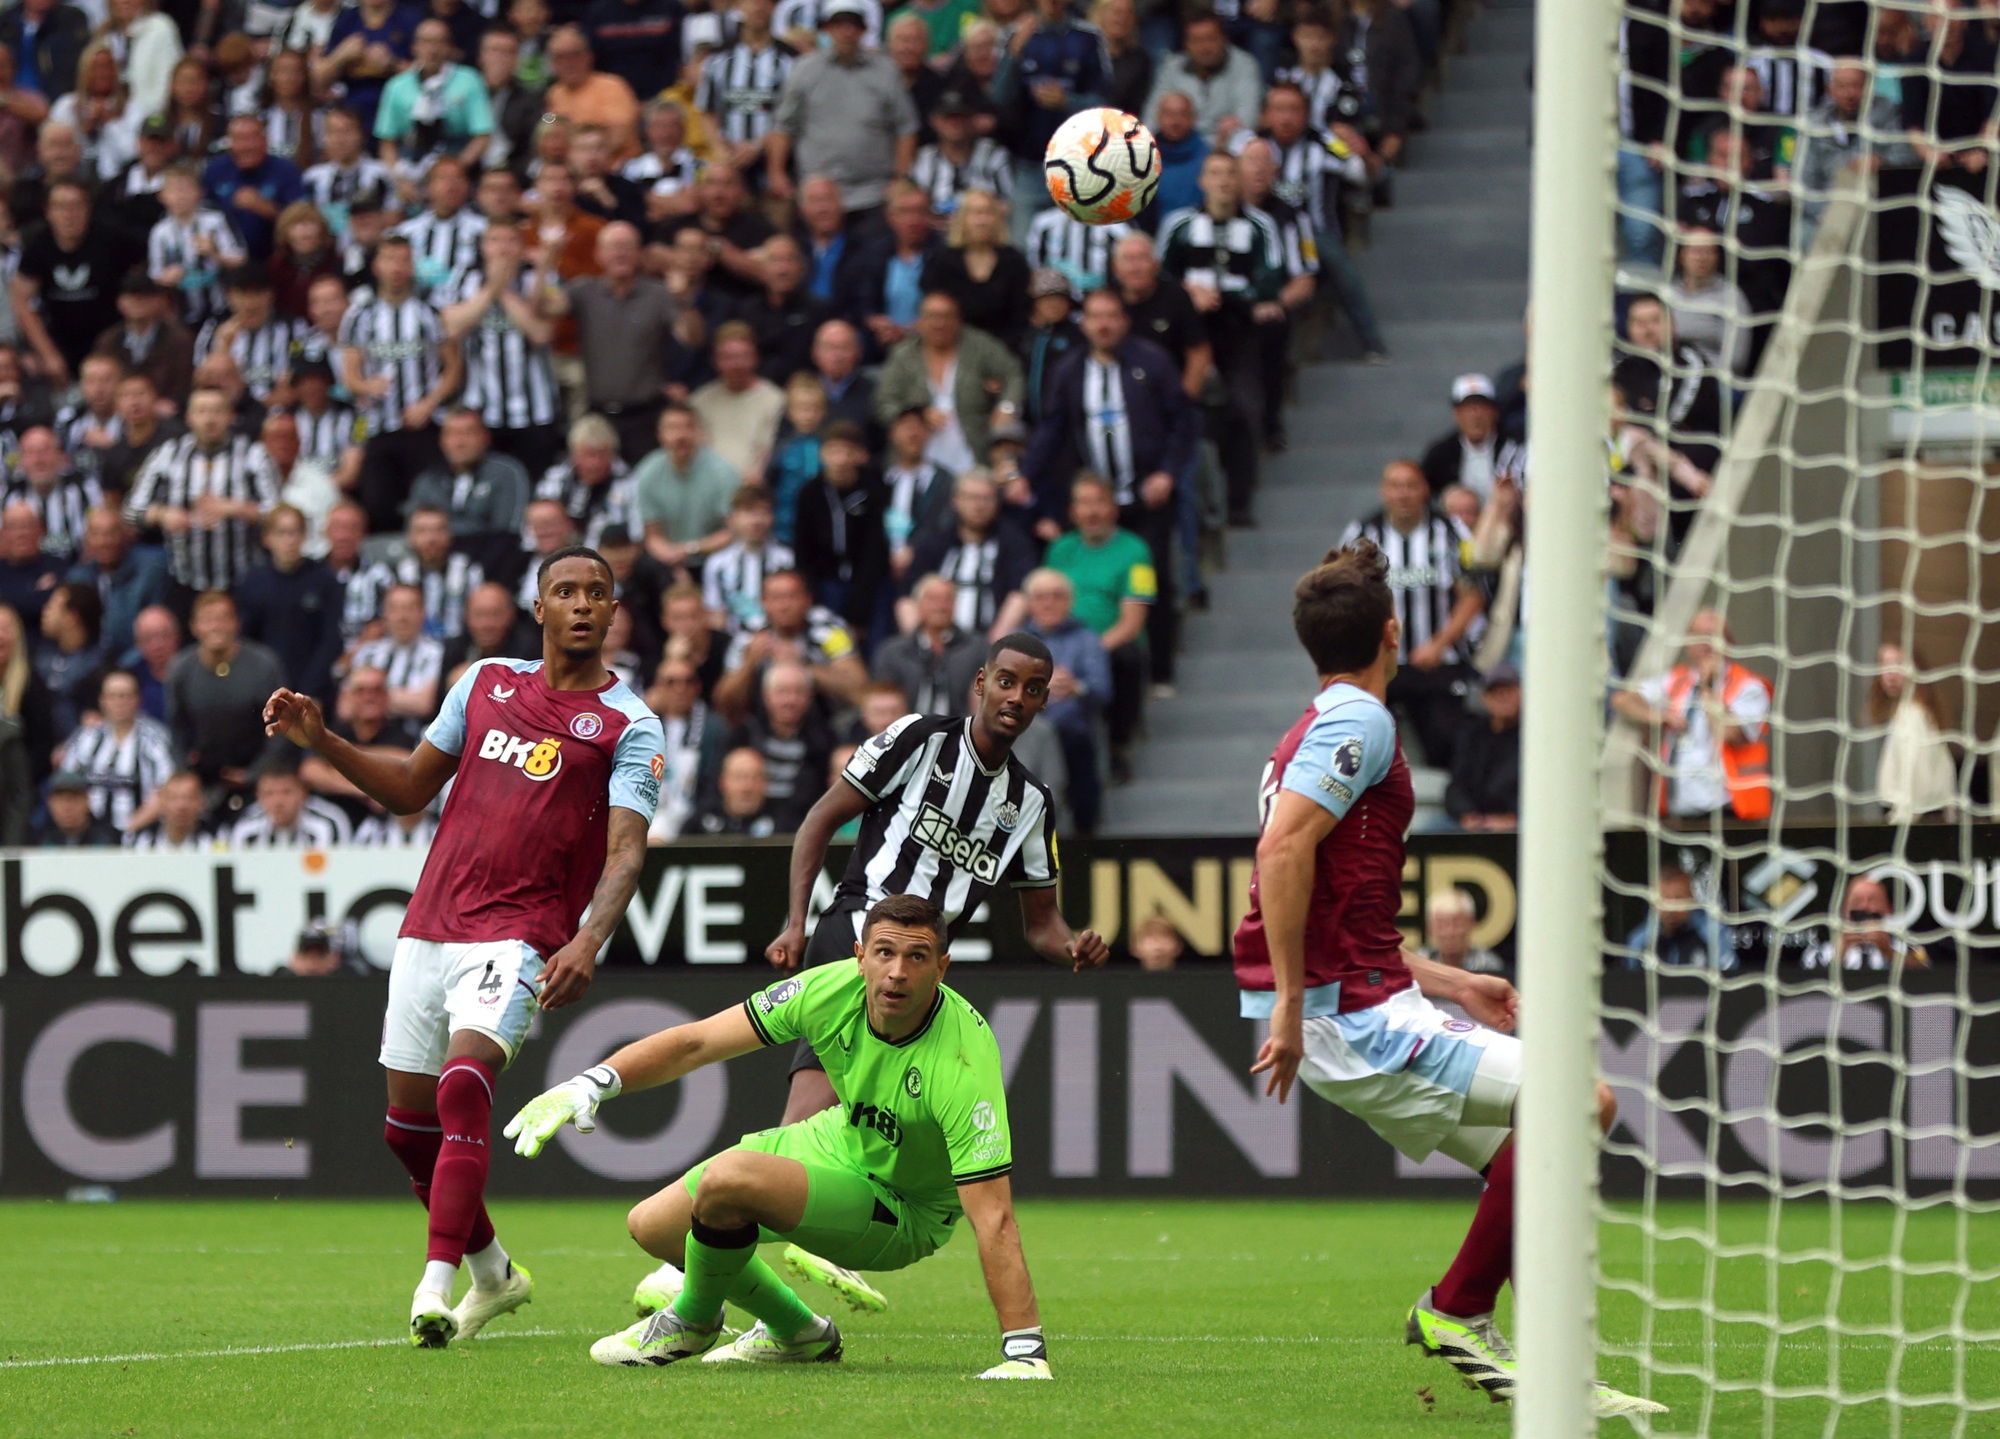 Hạ Aston Villa trận cầu 6 bàn, Newcastle giành ngôi đầu Ngoại hạng - Ảnh 2.